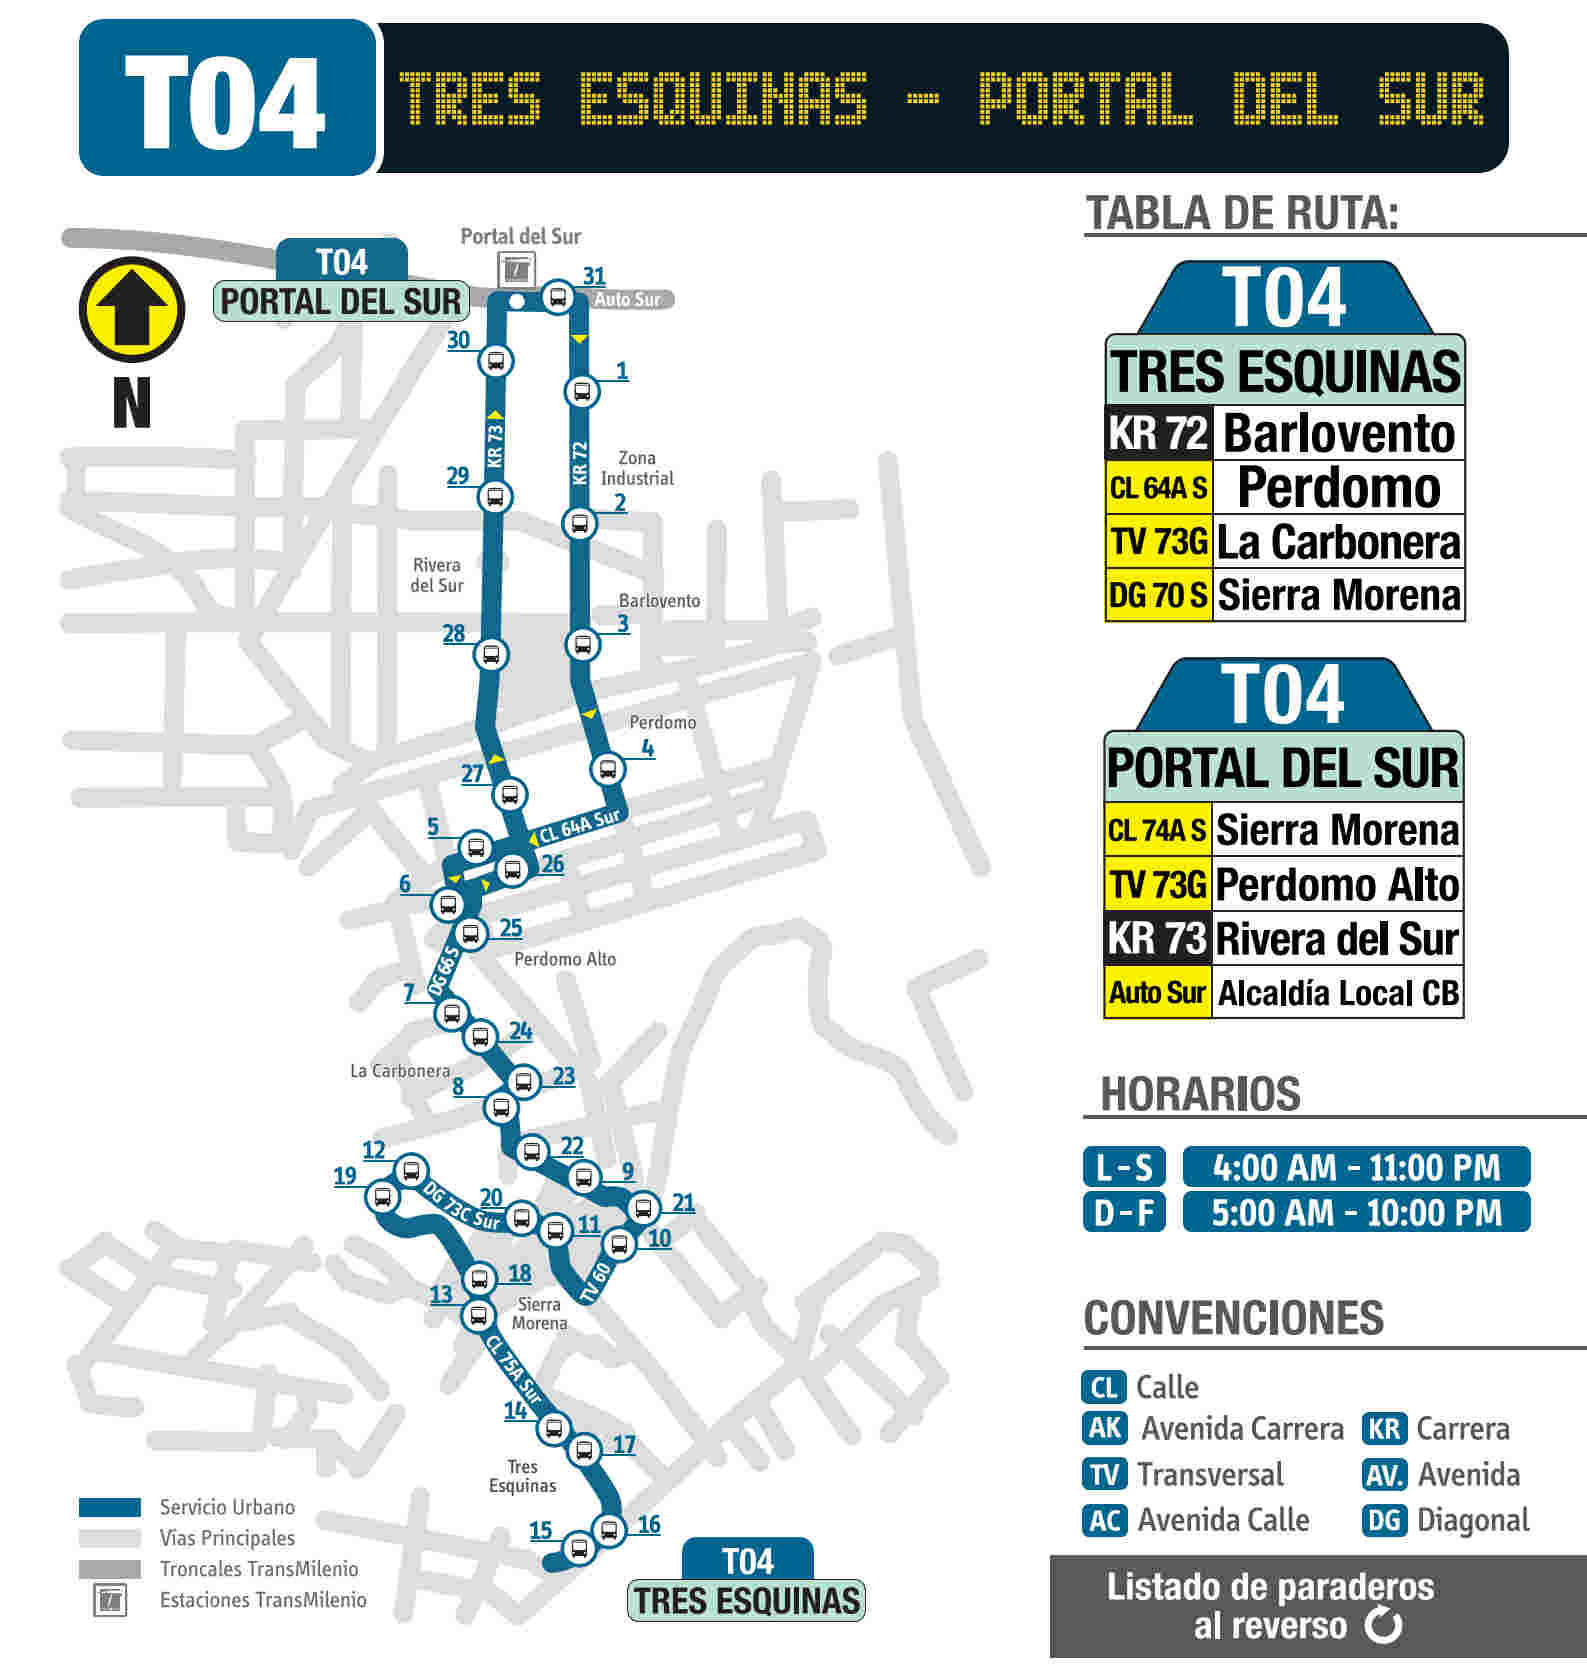 T04 Tres Esquinas - Portal del Sur, mapa bus urbano Bogotá